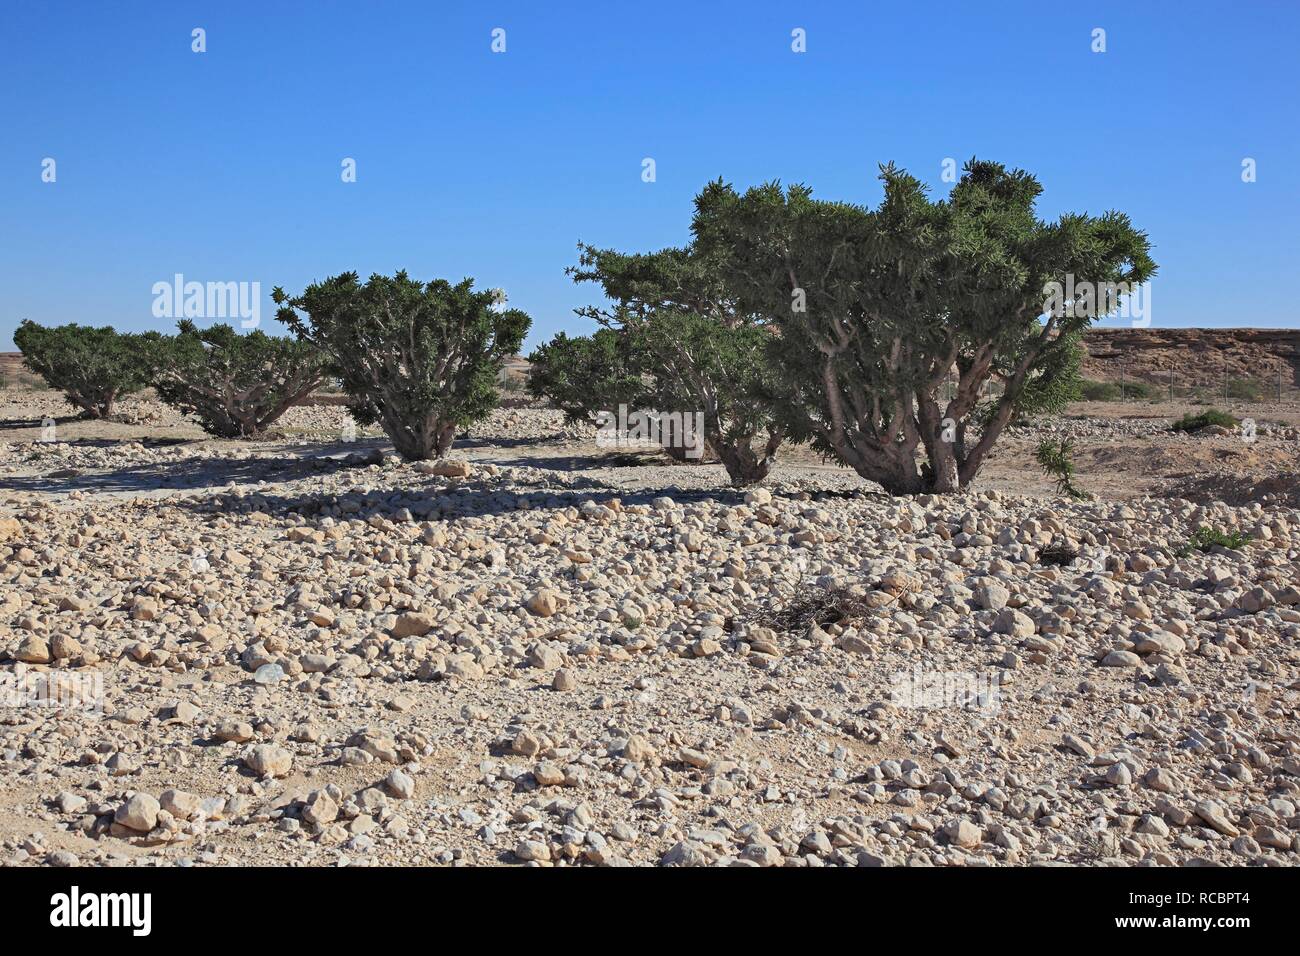 Alberi di frankincense (Boswellia sacra carterii), Wadi Dawqah, incenso piantagione di alberi, Sito Patrimonio Mondiale dell'UNESCO, la regione di Dhofar Foto Stock